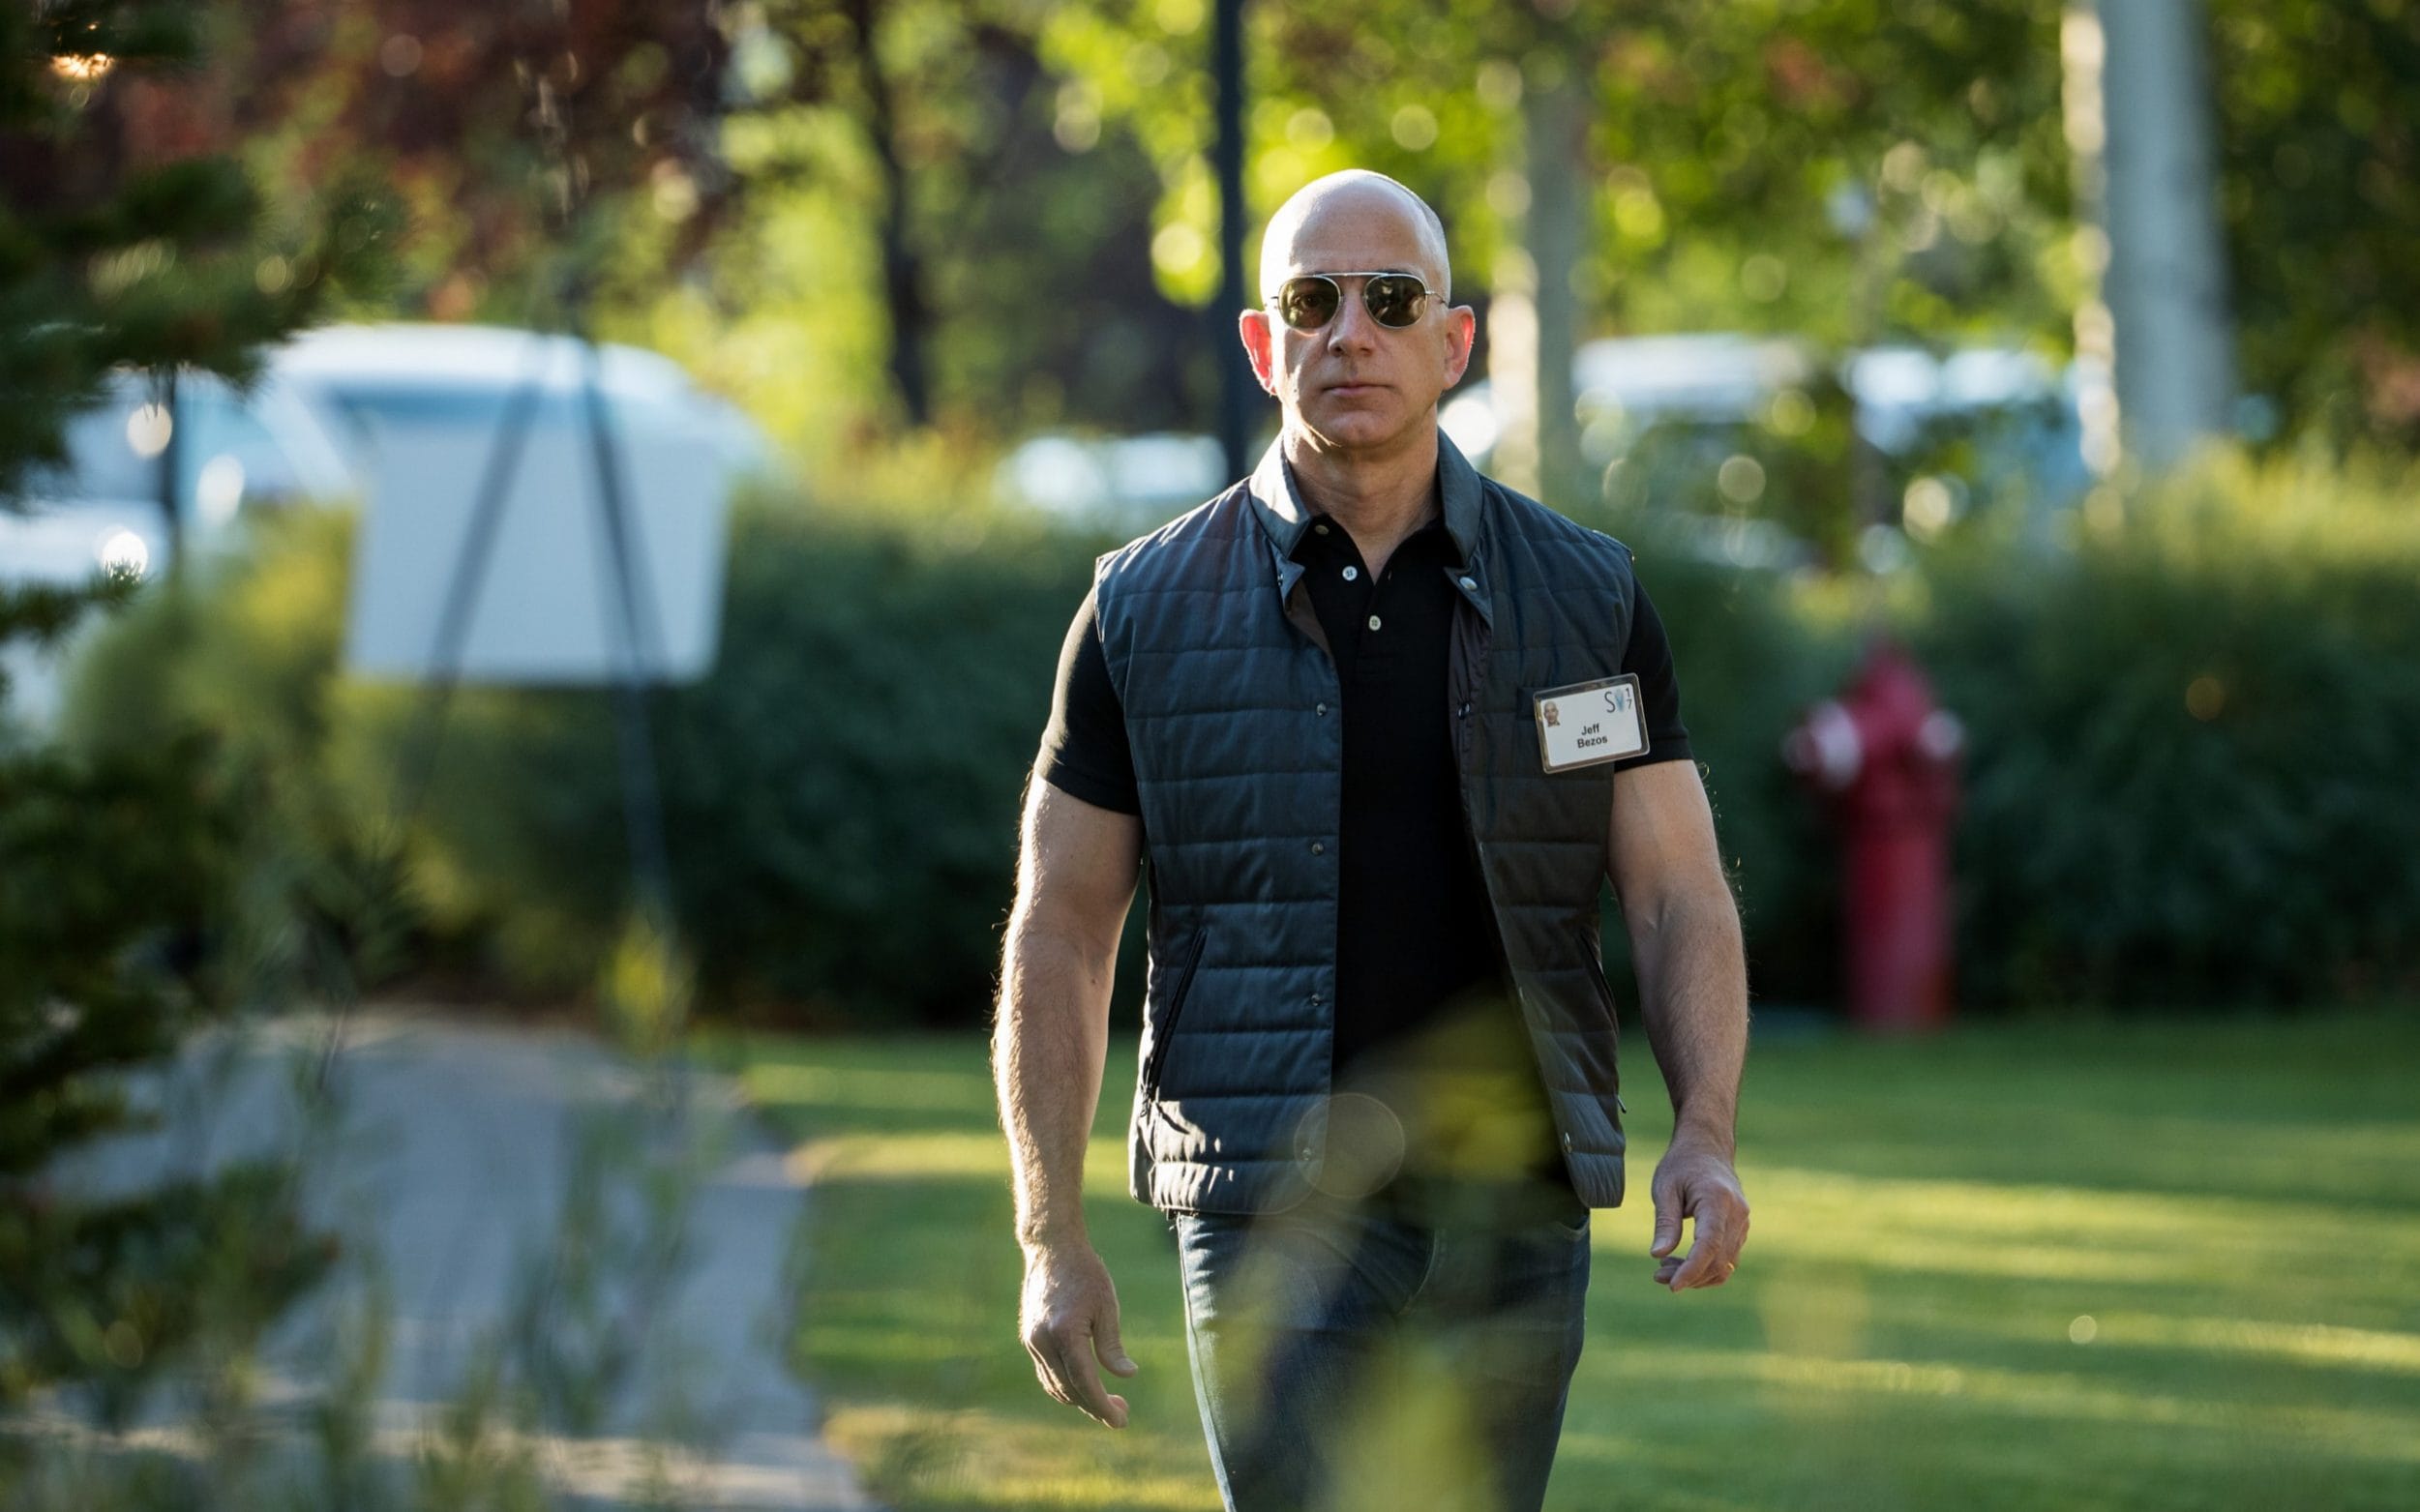 Jeff Bezos wearing sunglasses